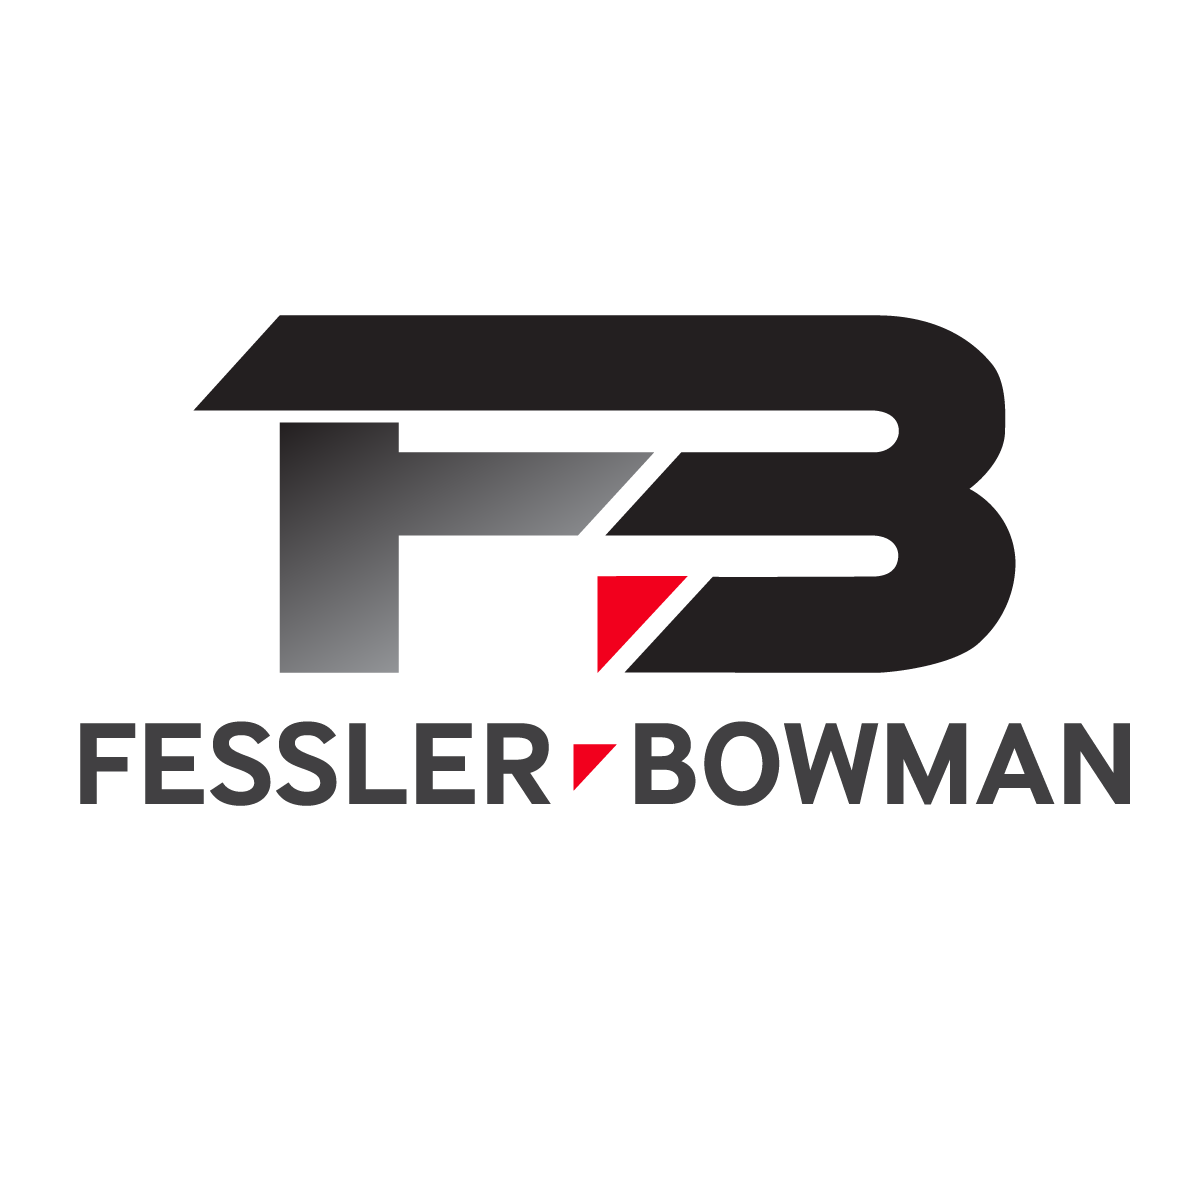 Fessler & Bowman | Full-Service Concrete & Civil Contractor